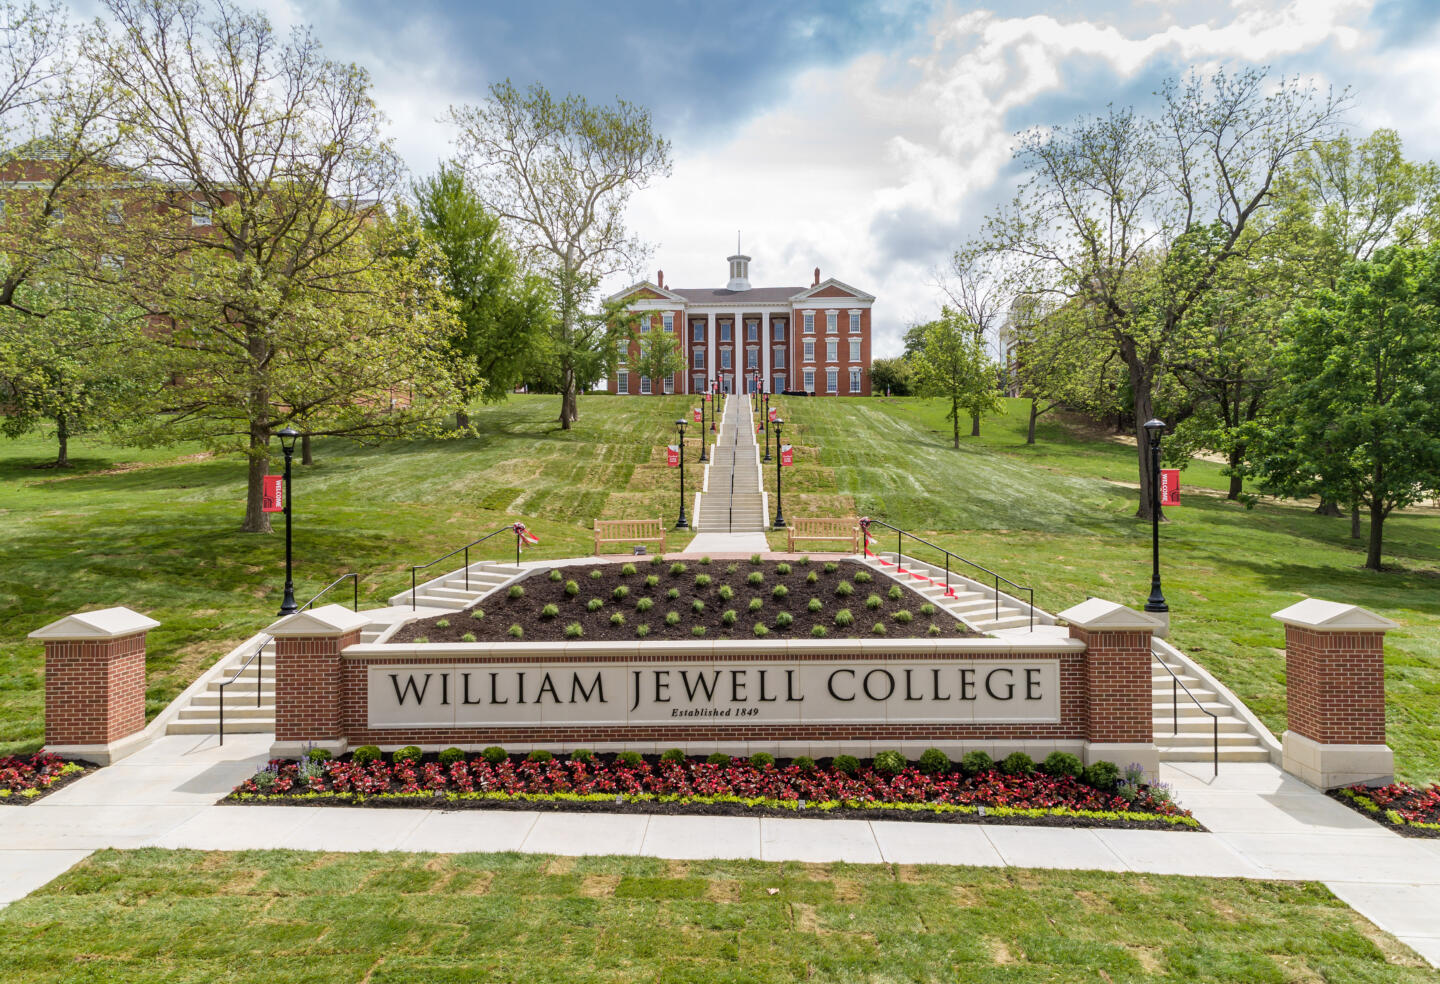 William Jewel College campus